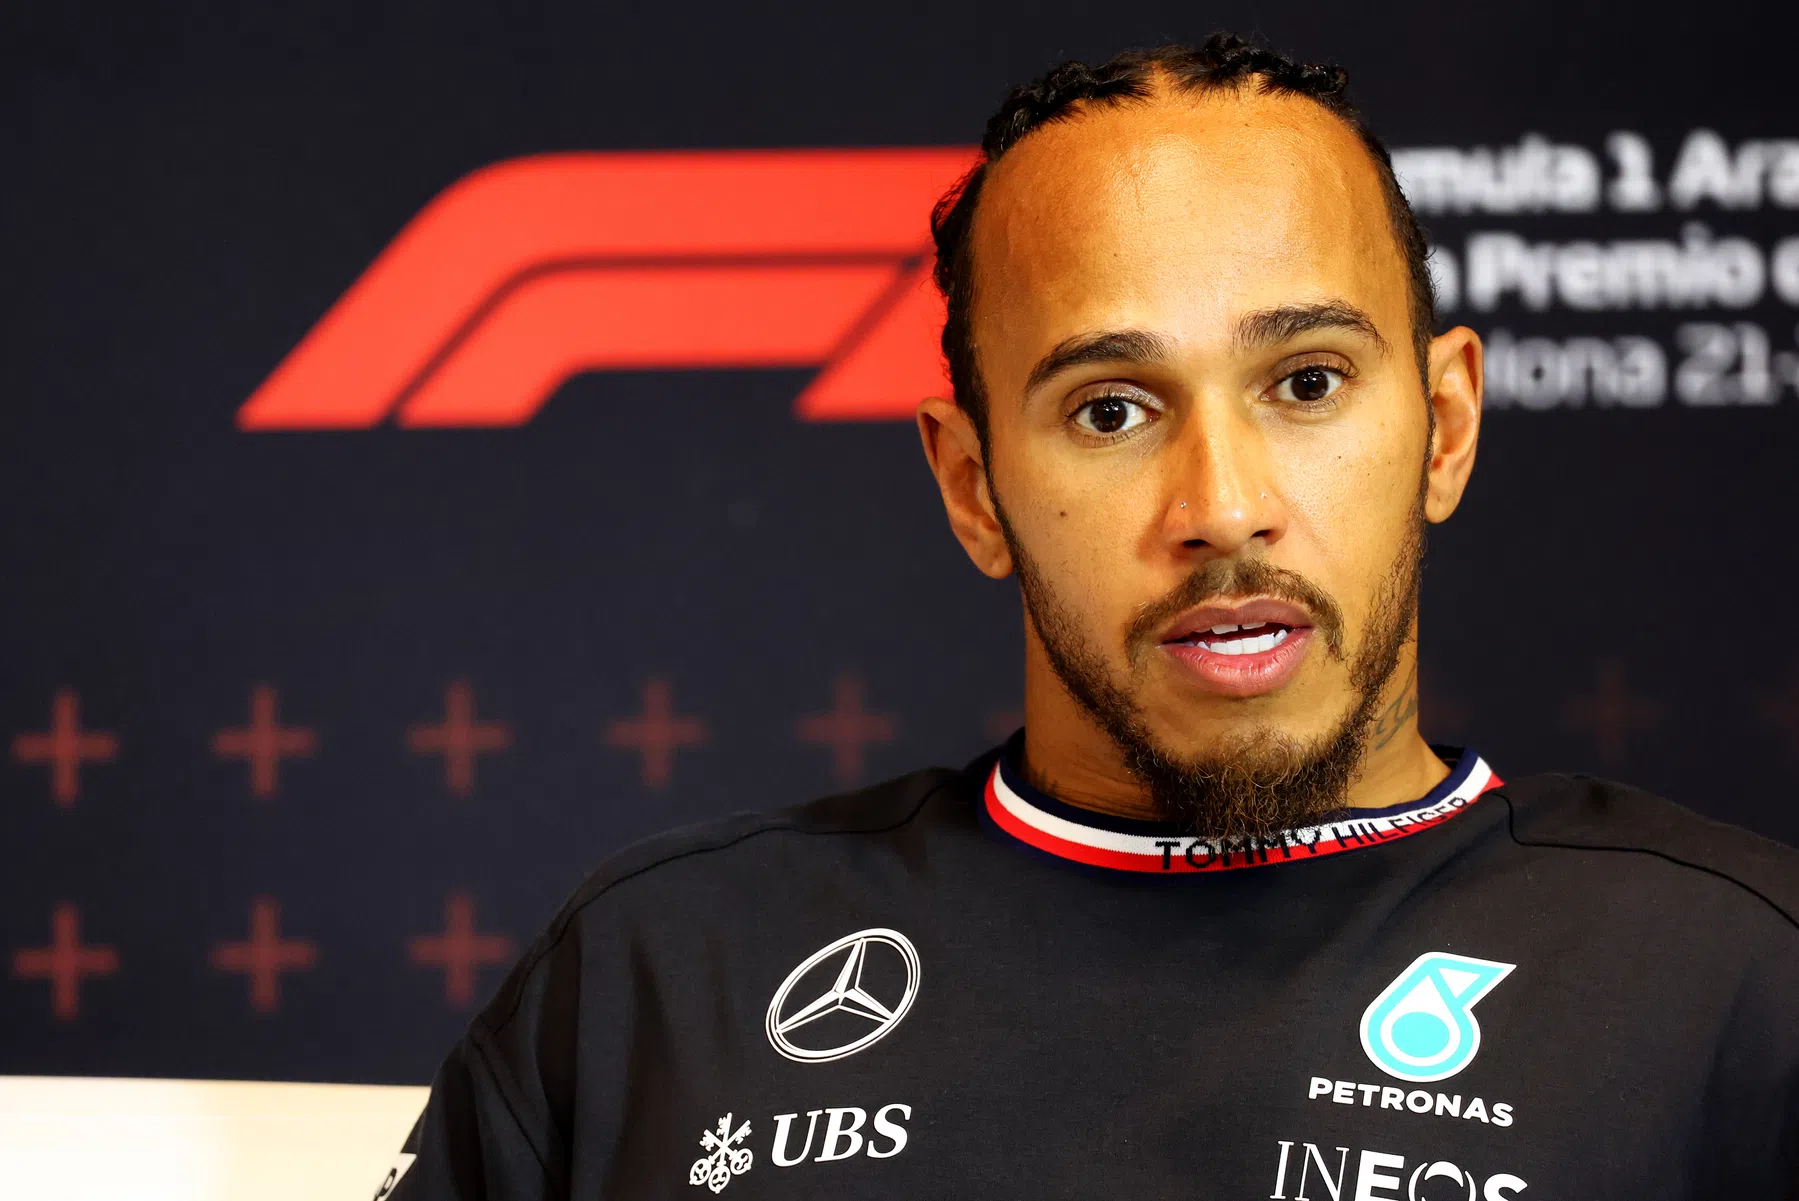 Lewis hamilton niet zeker of winst in het verschiet ligt bij Mercedes na GP van Spanje